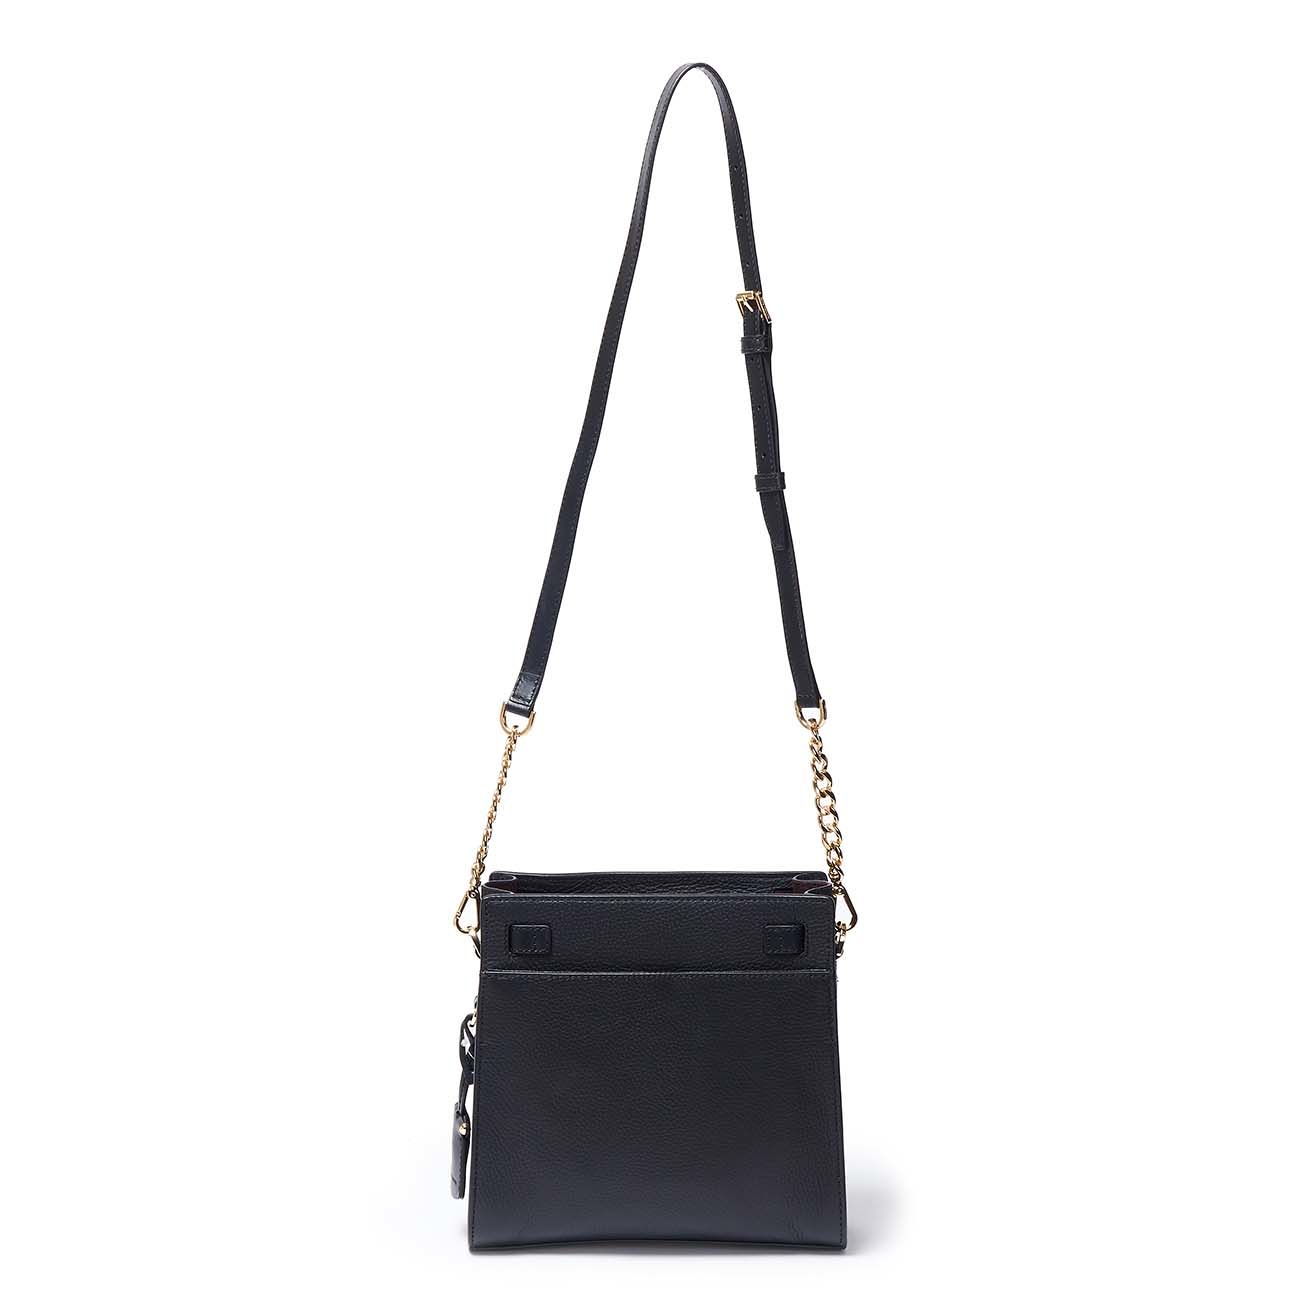 Buy Michael Kors Black Hamilton Bag for Women Online